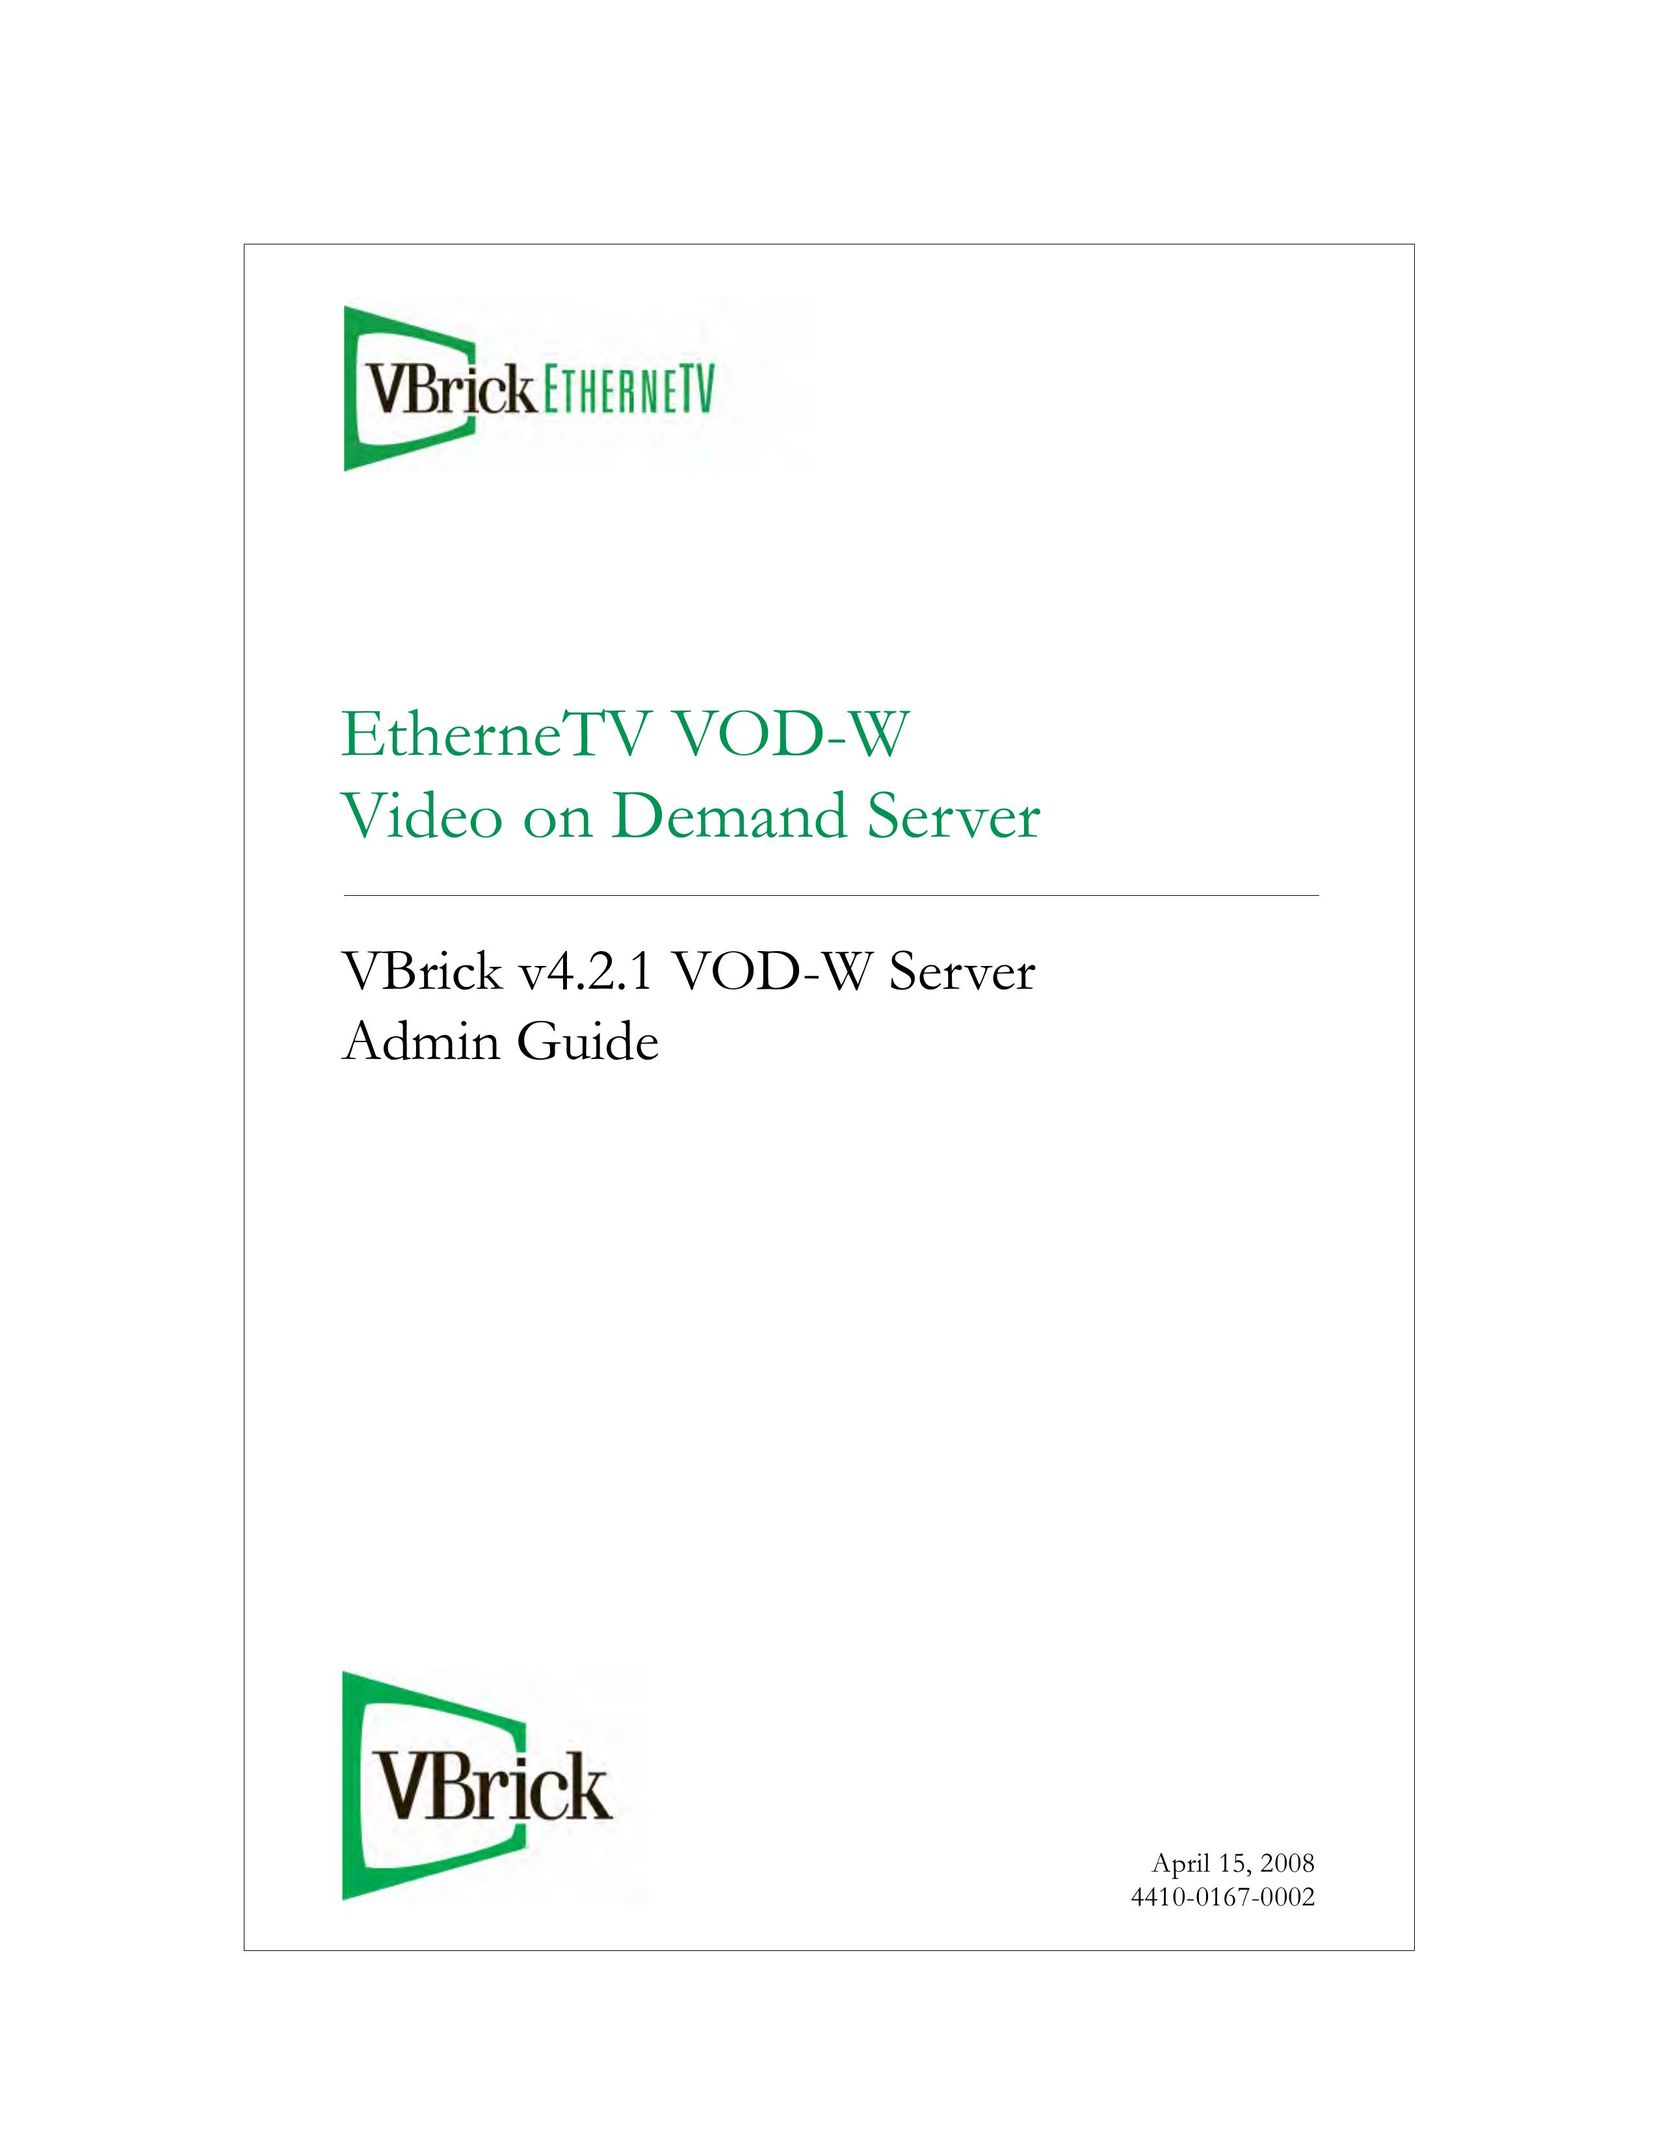 VBrick Systems VBrick v4.2.1 Home Theater Server User Manual